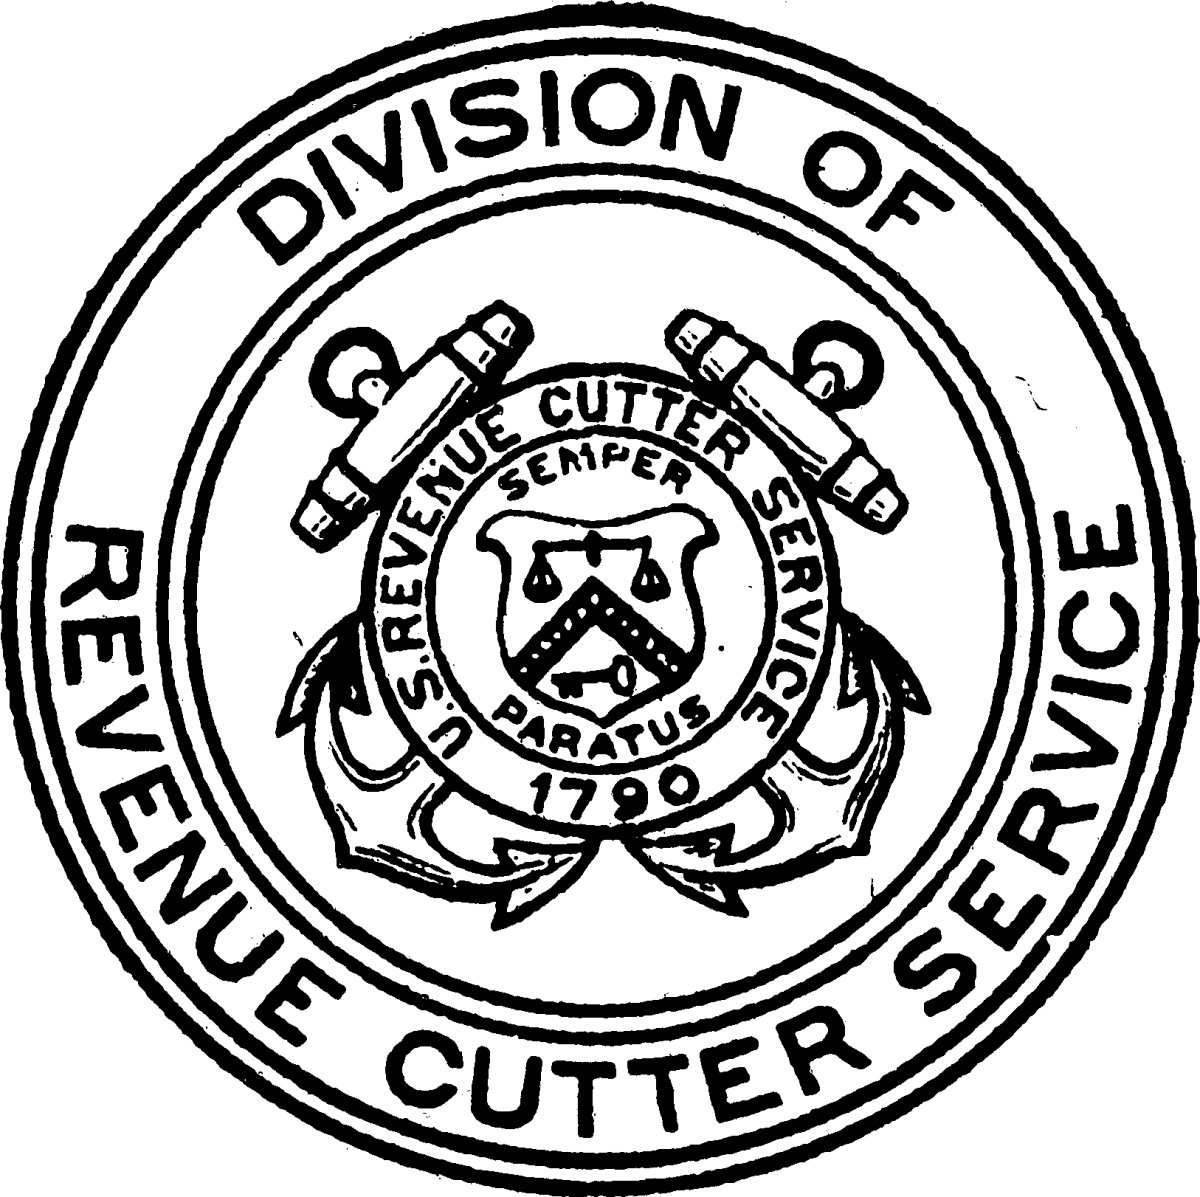 Revenue Cutter Service